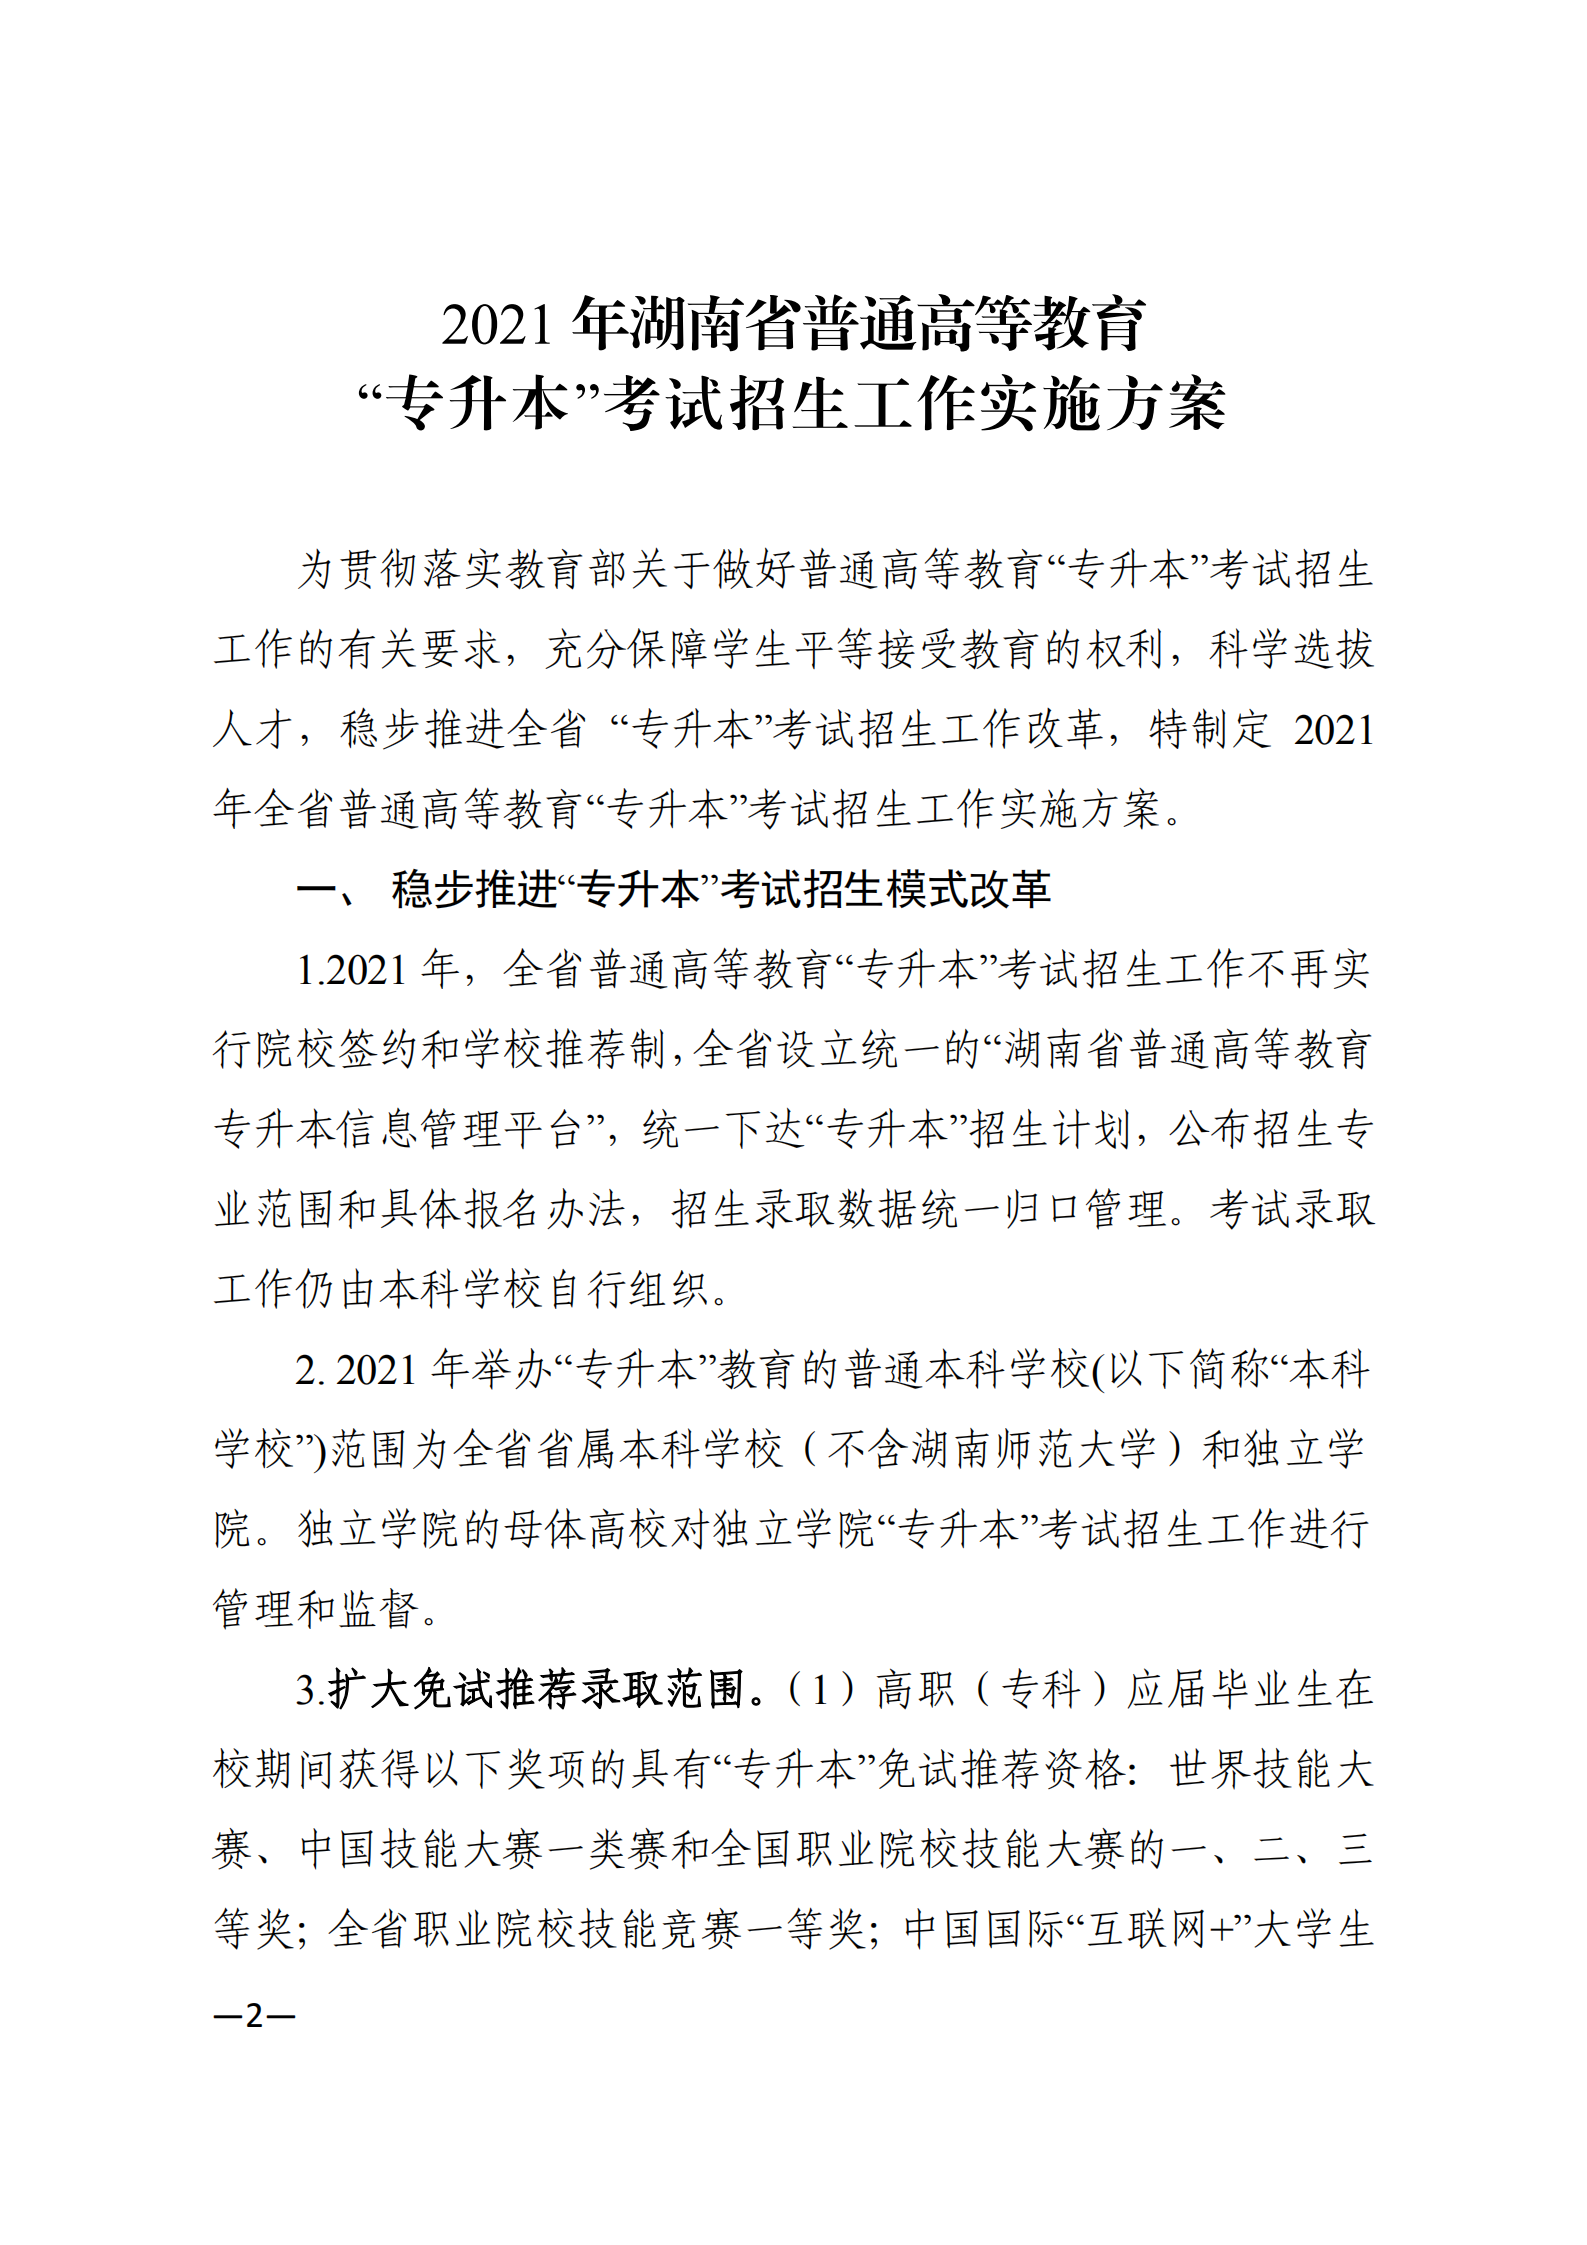 3_湘教发〔2021〕2号 关于印发《2021年湖南省普通高等教育“专升本”考试招生工作实施方案》的通知_01.png